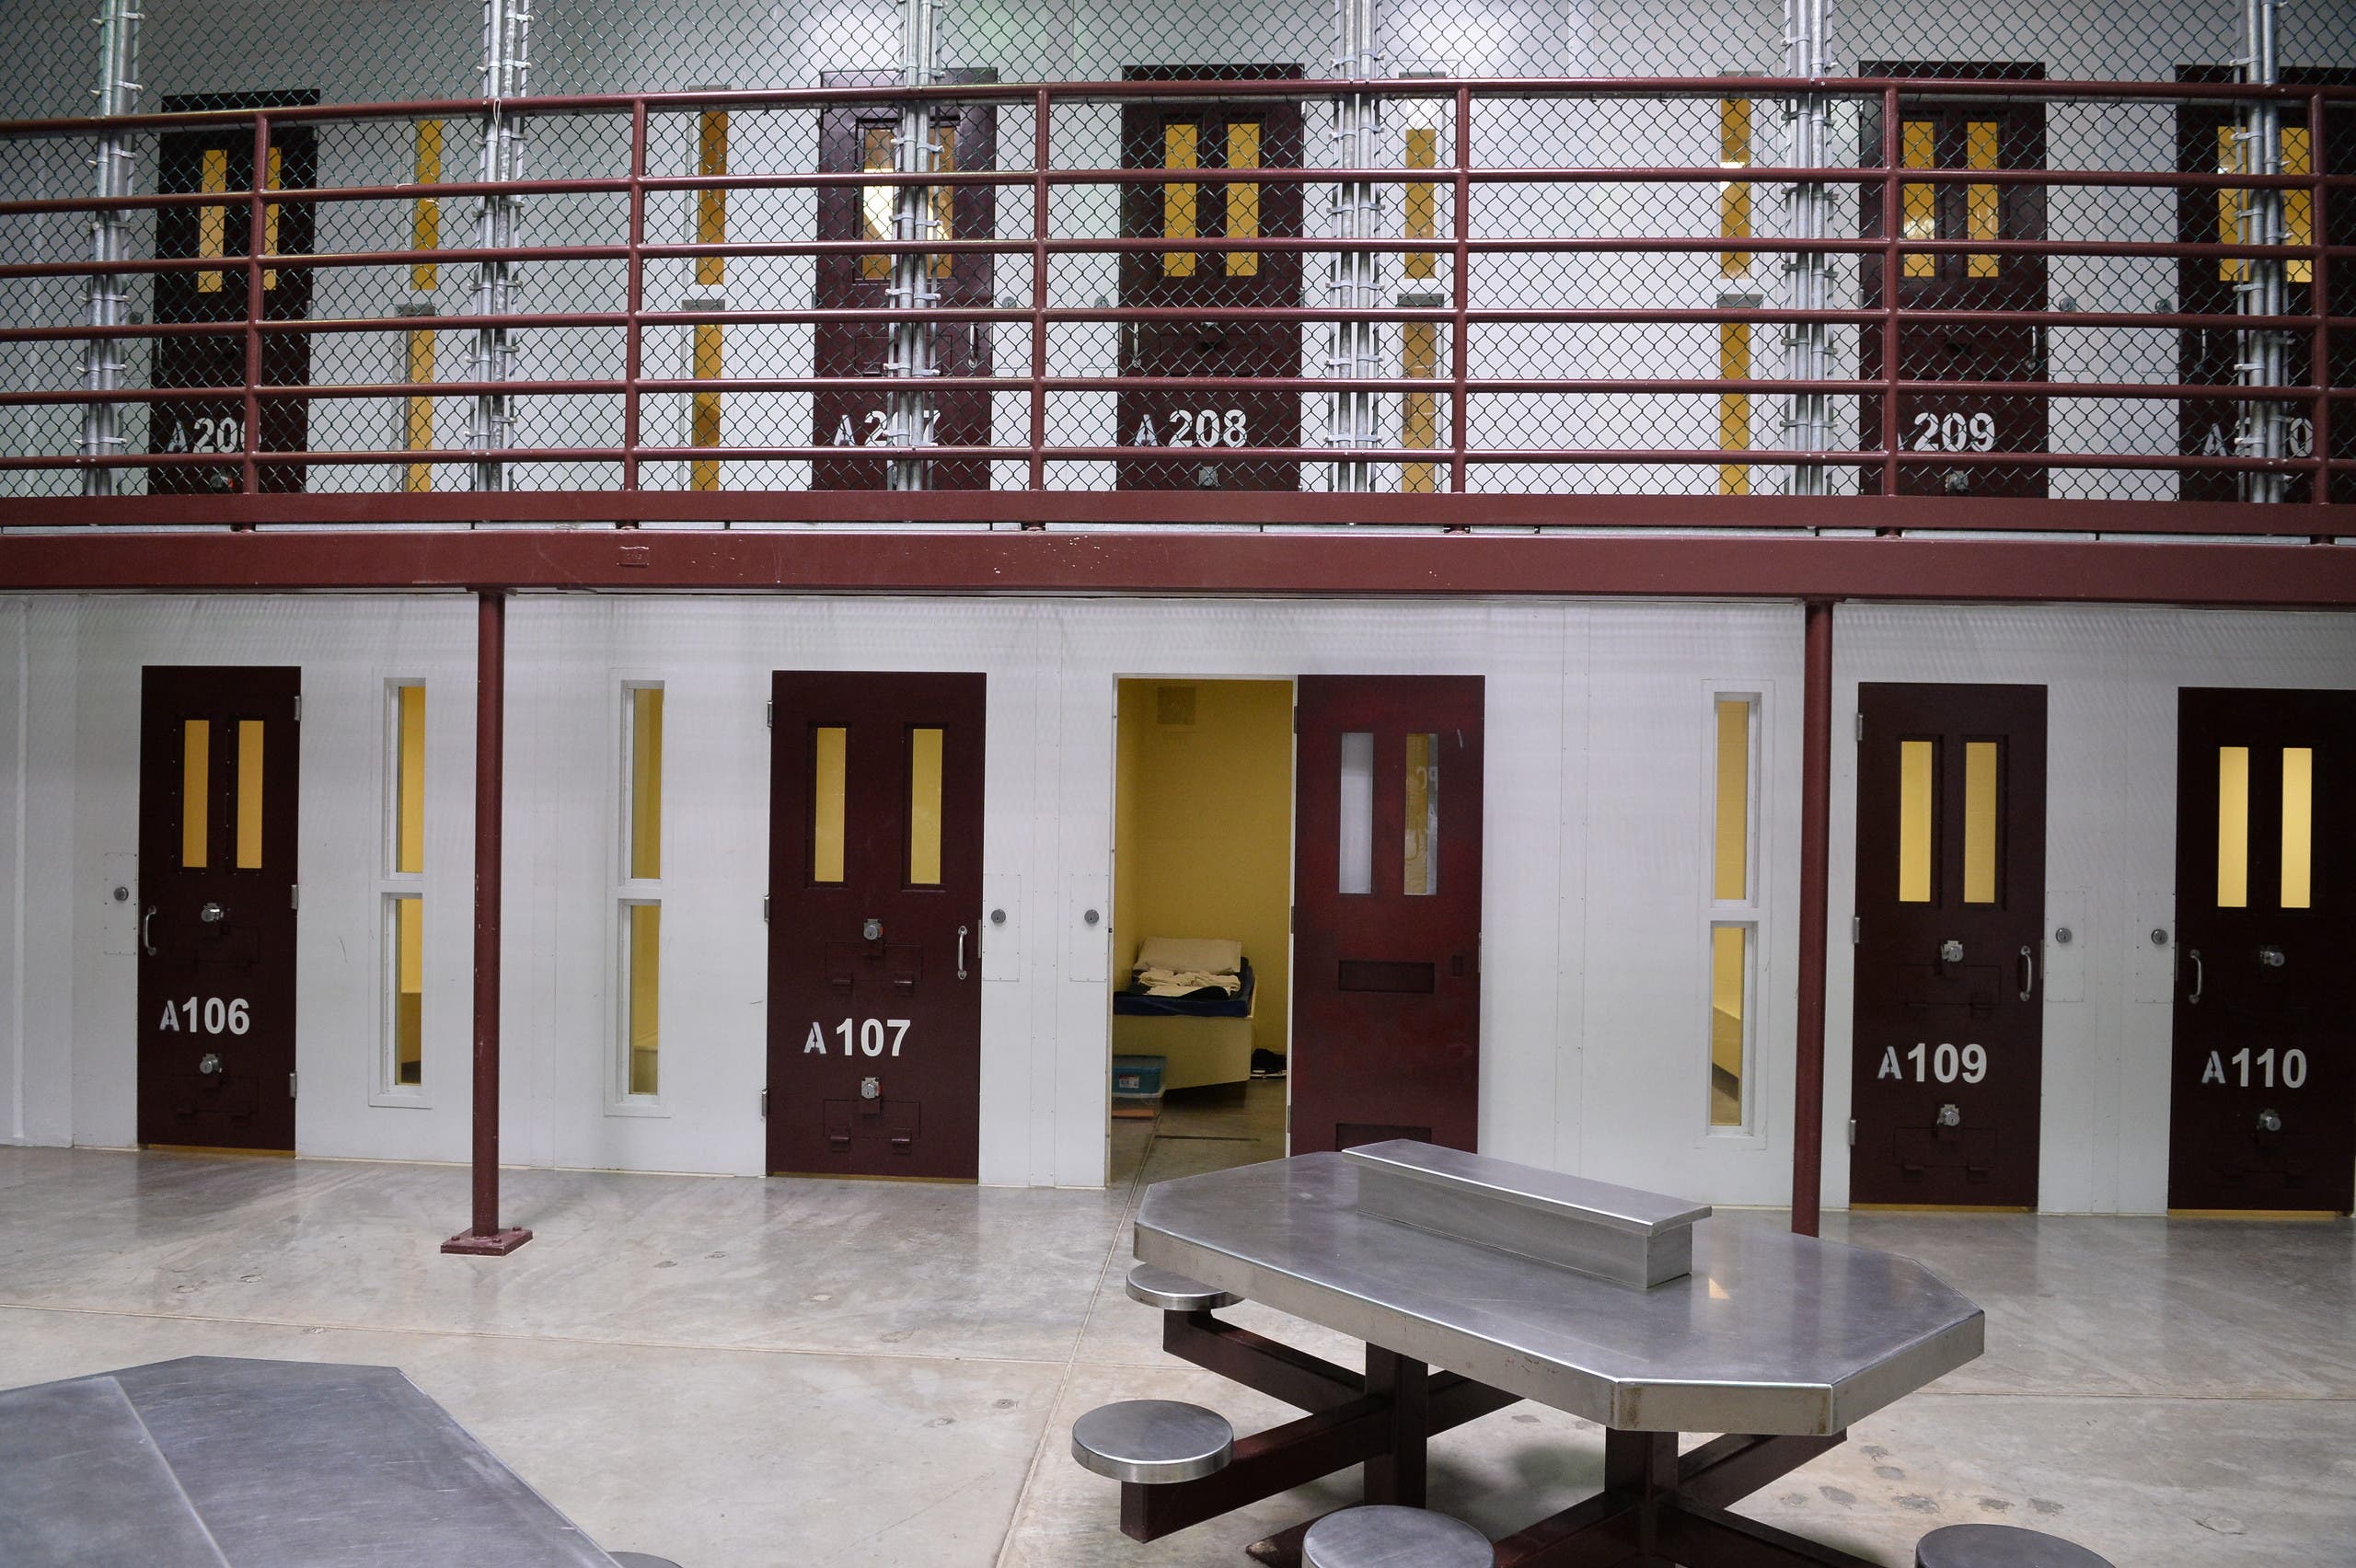  العنبر رقم 6 في سجن غونتانامو